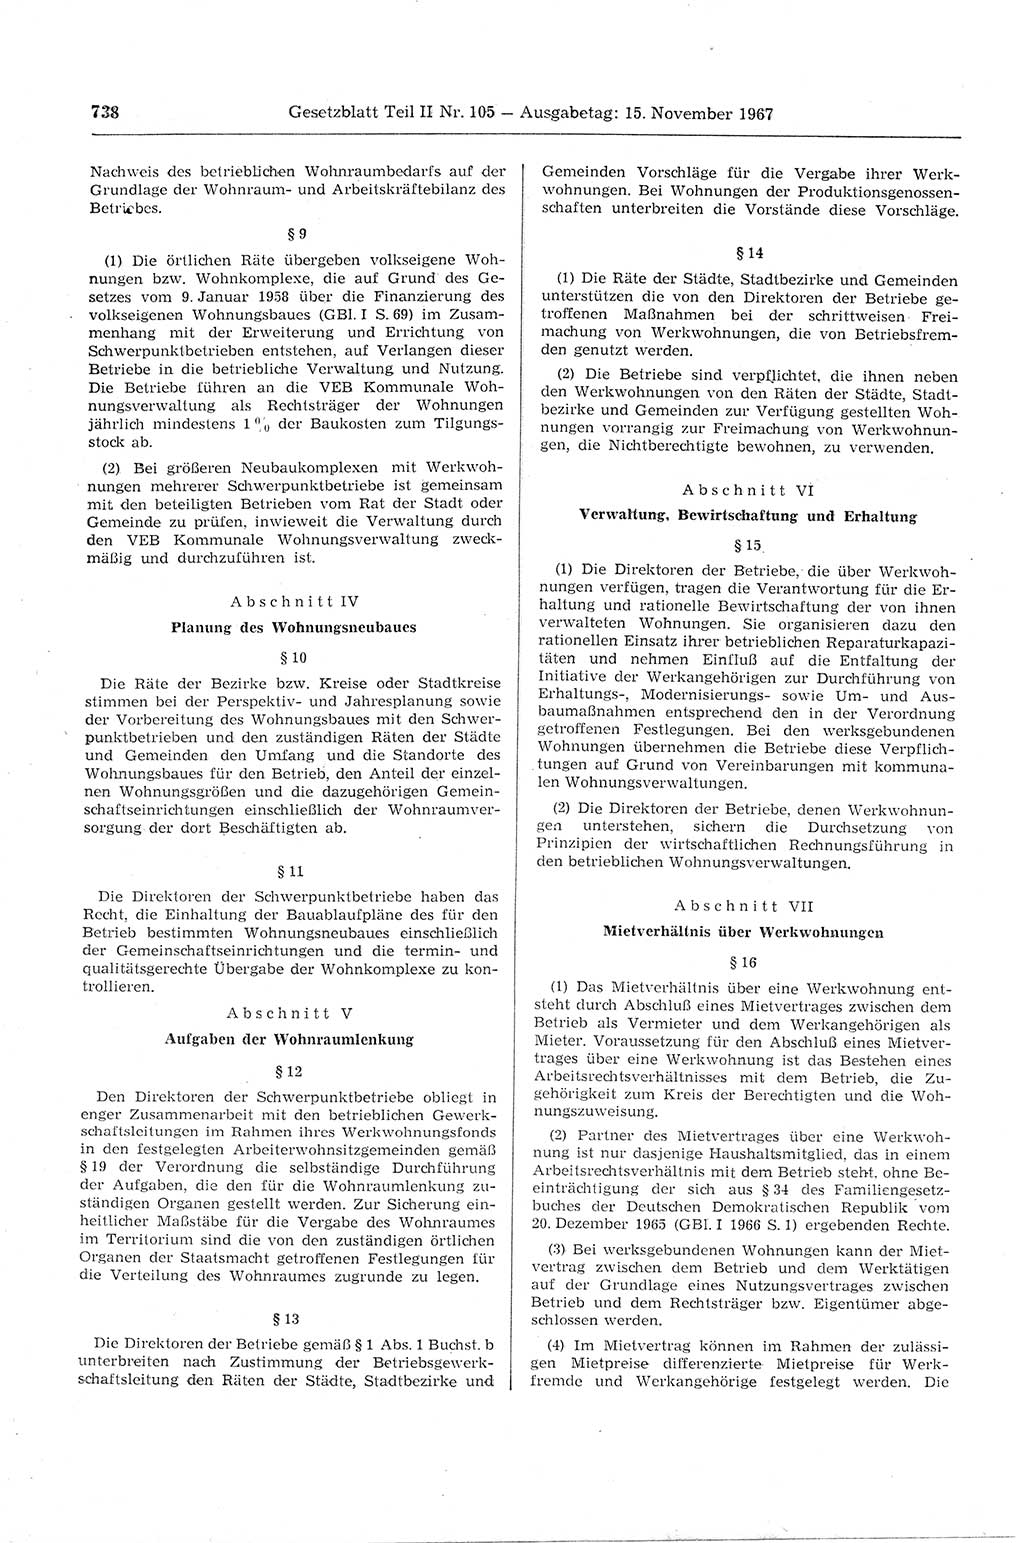 Gesetzblatt (GBl.) der Deutschen Demokratischen Republik (DDR) Teil ⅠⅠ 1967, Seite 738 (GBl. DDR ⅠⅠ 1967, S. 738)